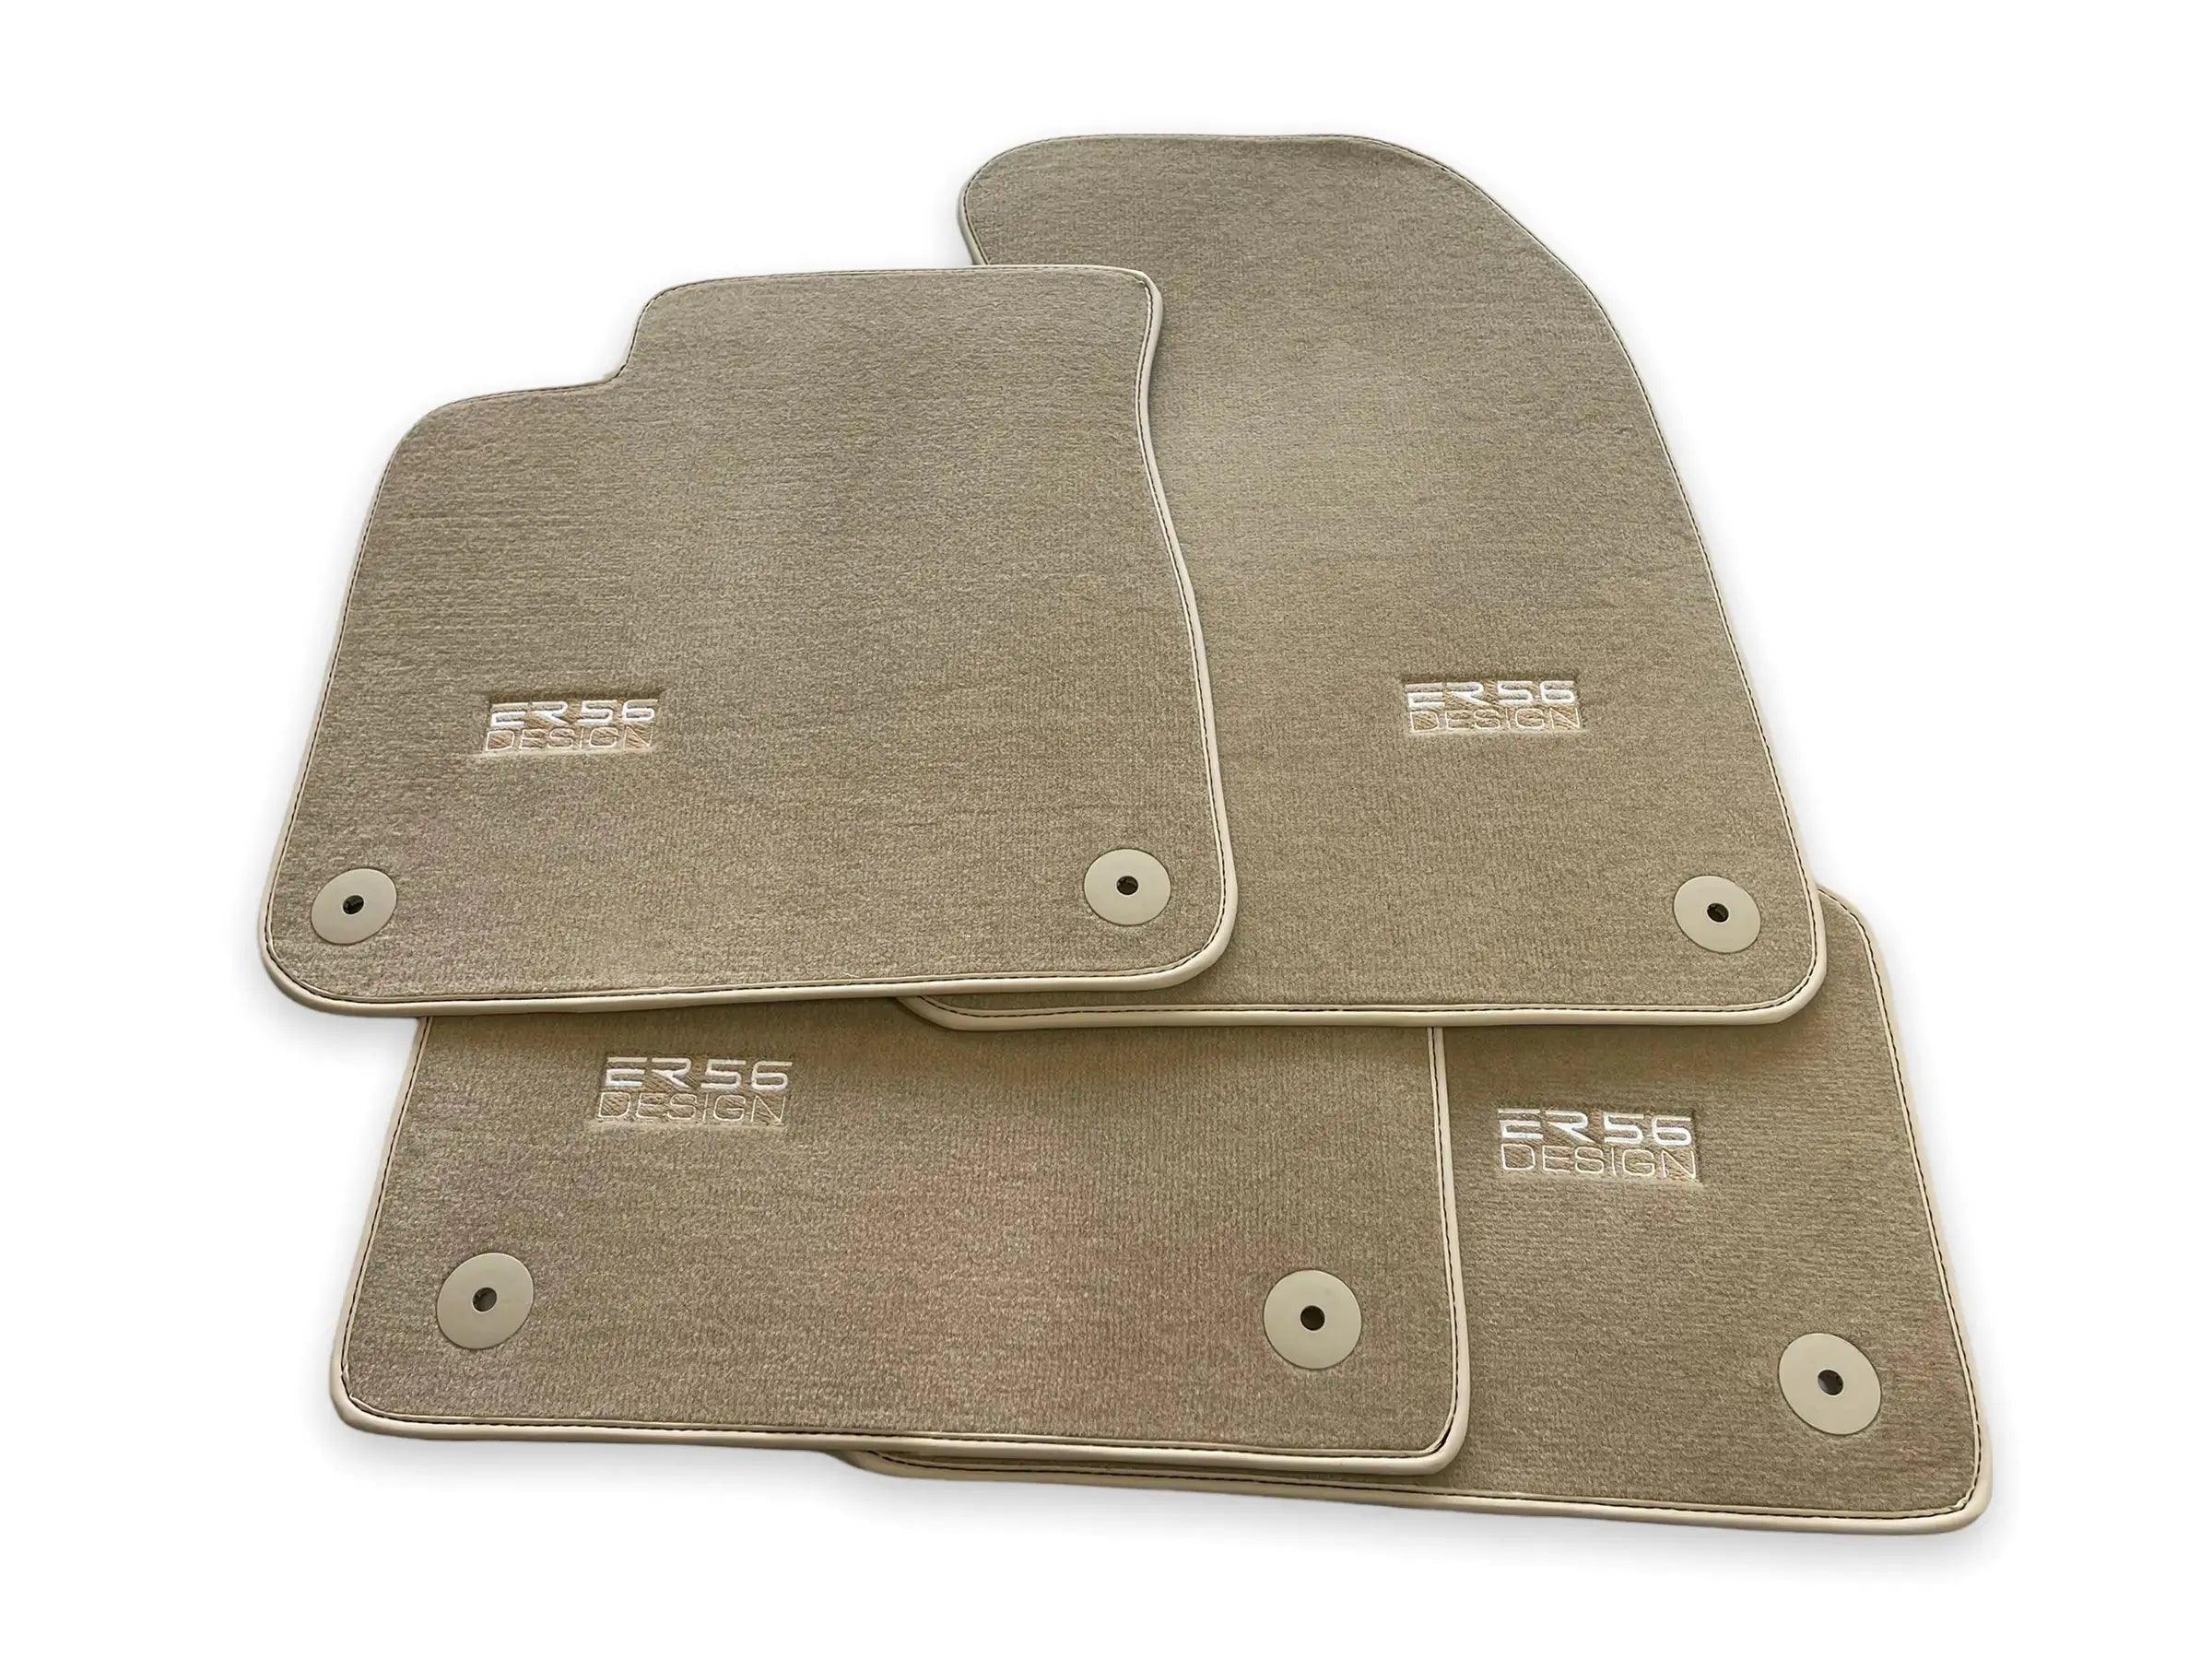 Beige Floor Mats for Audi Q2 (2020-2024) | ER56 Design - AutoWin